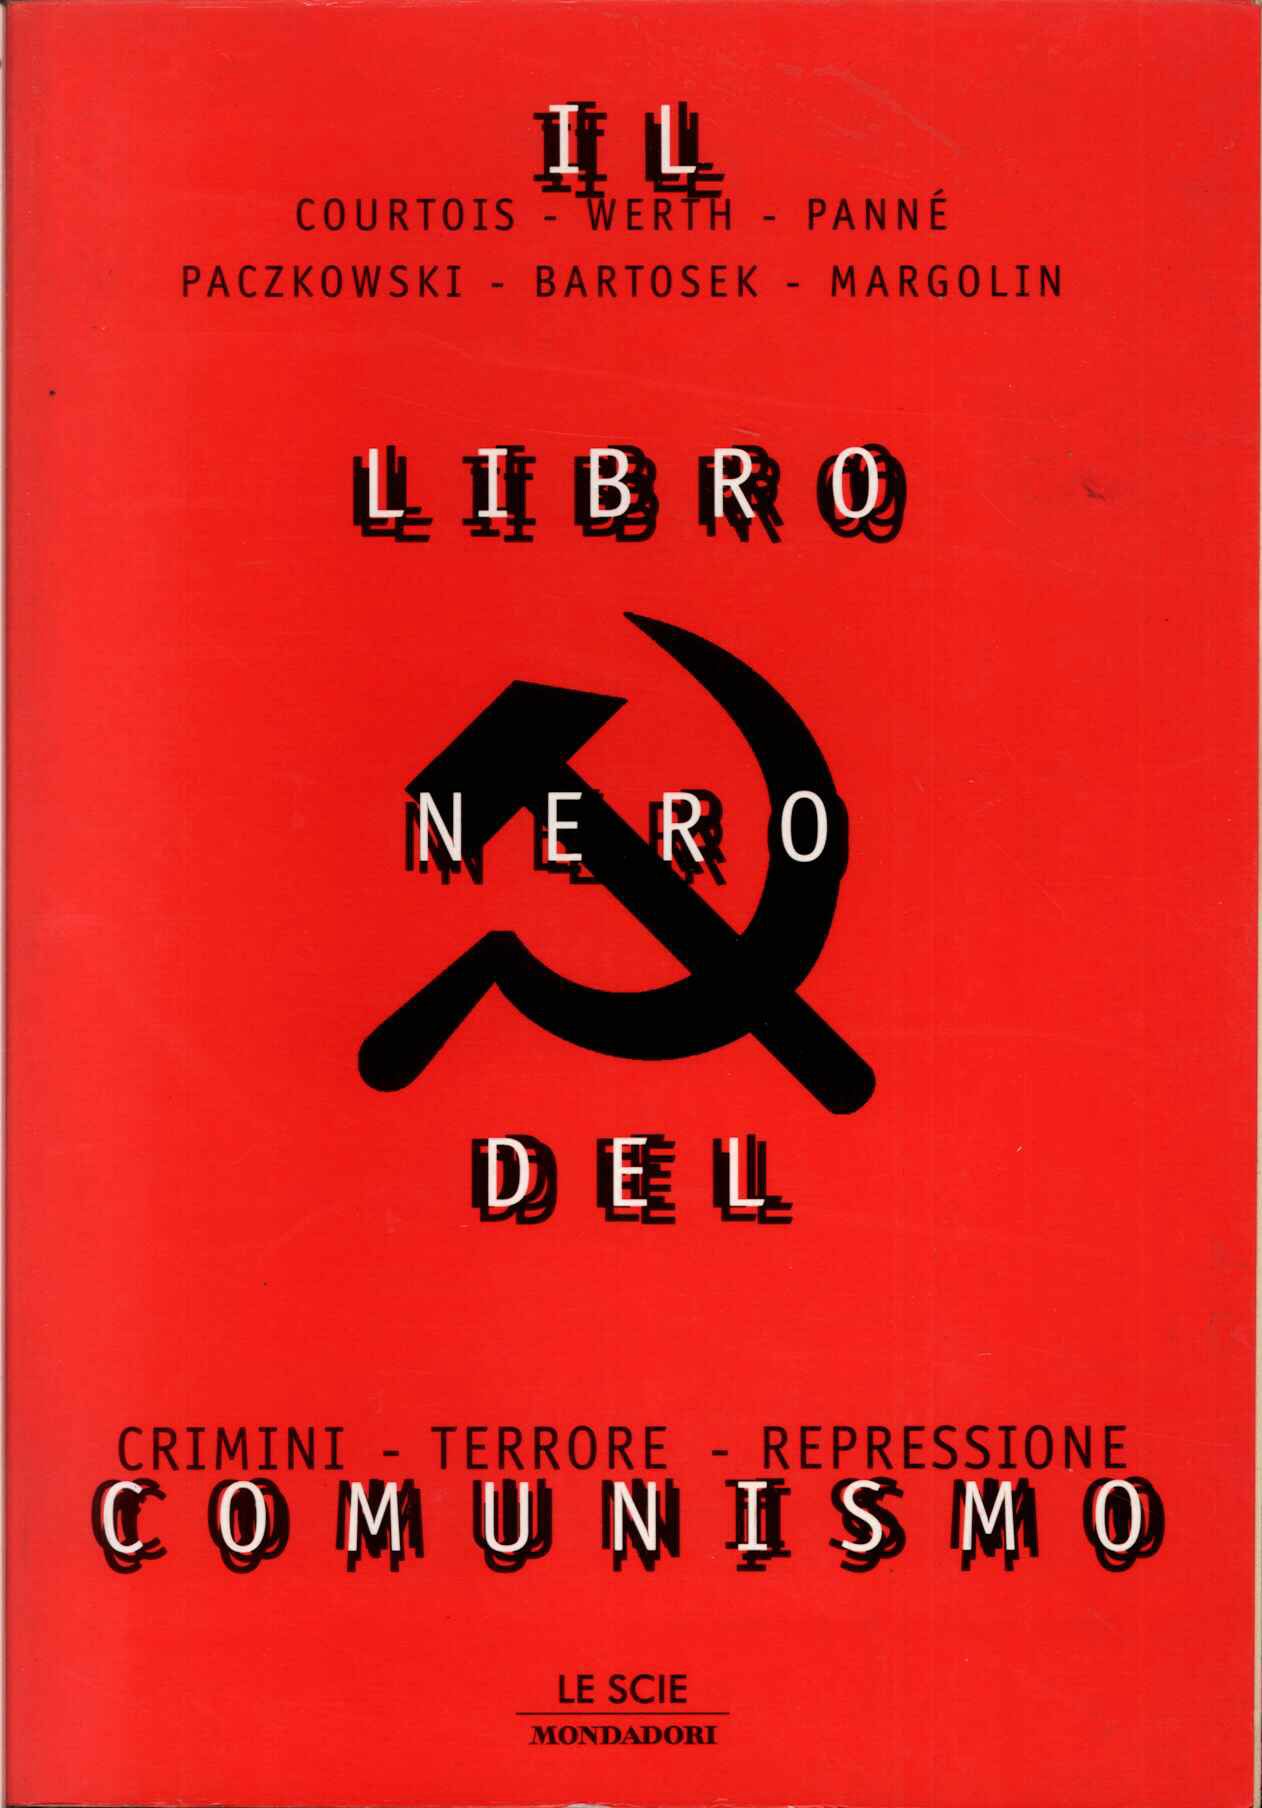 Libro nero del comunismo